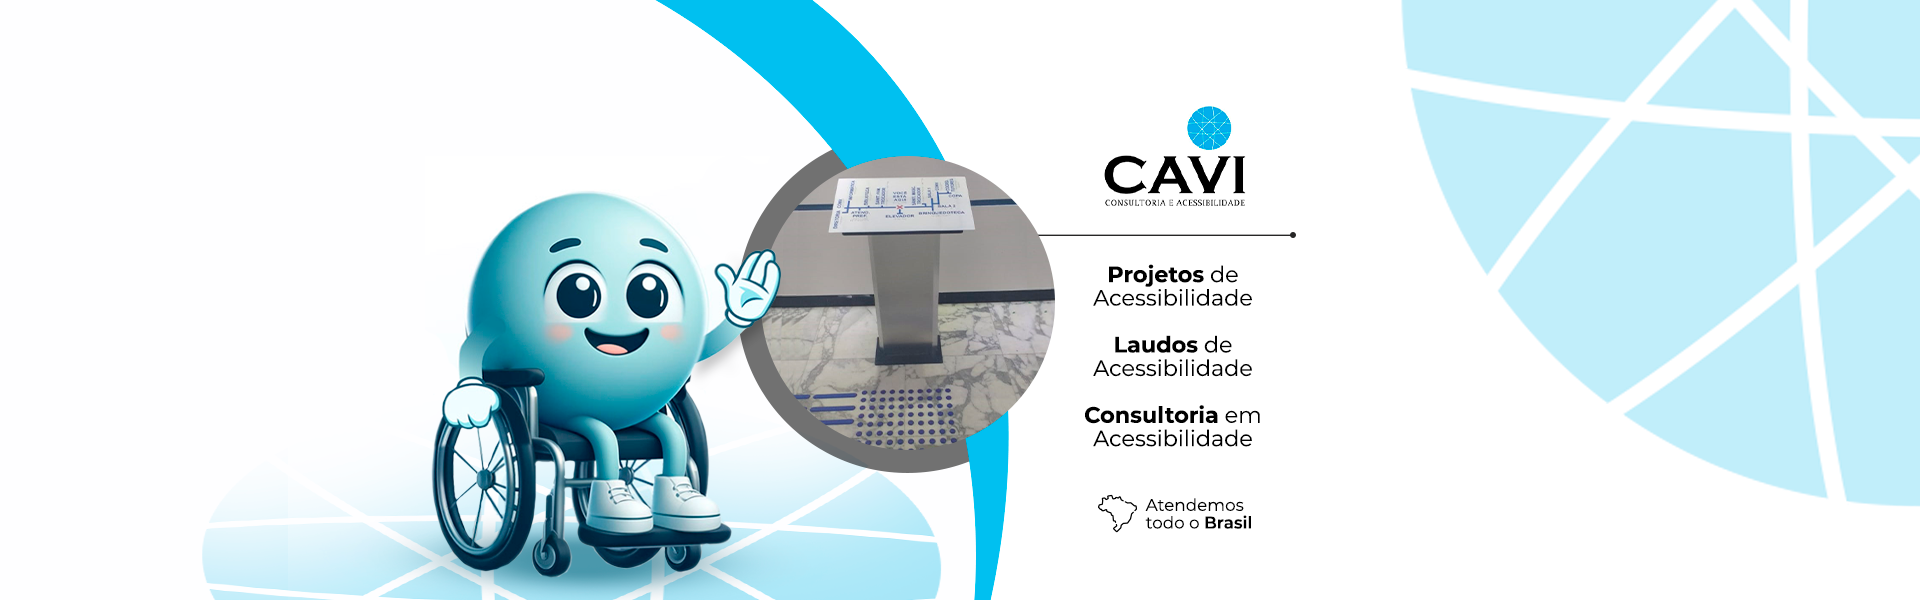 CAVI Acessibilidade - Consultoria e Acessibilidade